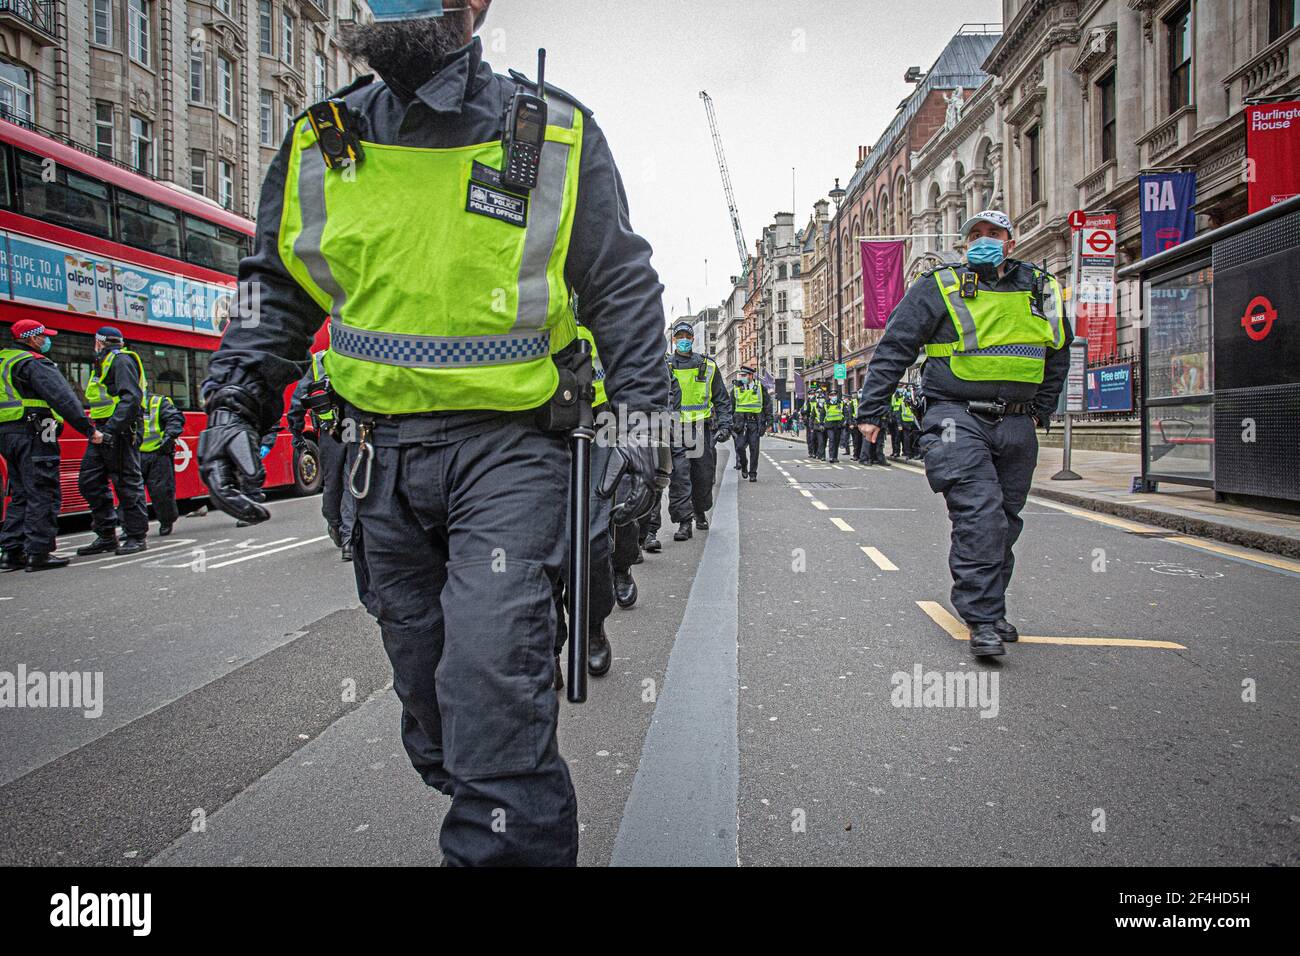 Londres, Royaume-Uni. 20 mars 2021. Des policiers patrouillent dans la rue pendant le rassemblement mondial pour la liberté. Des militants et des gens ont organisé une nouvelle manifestation Banque D'Images